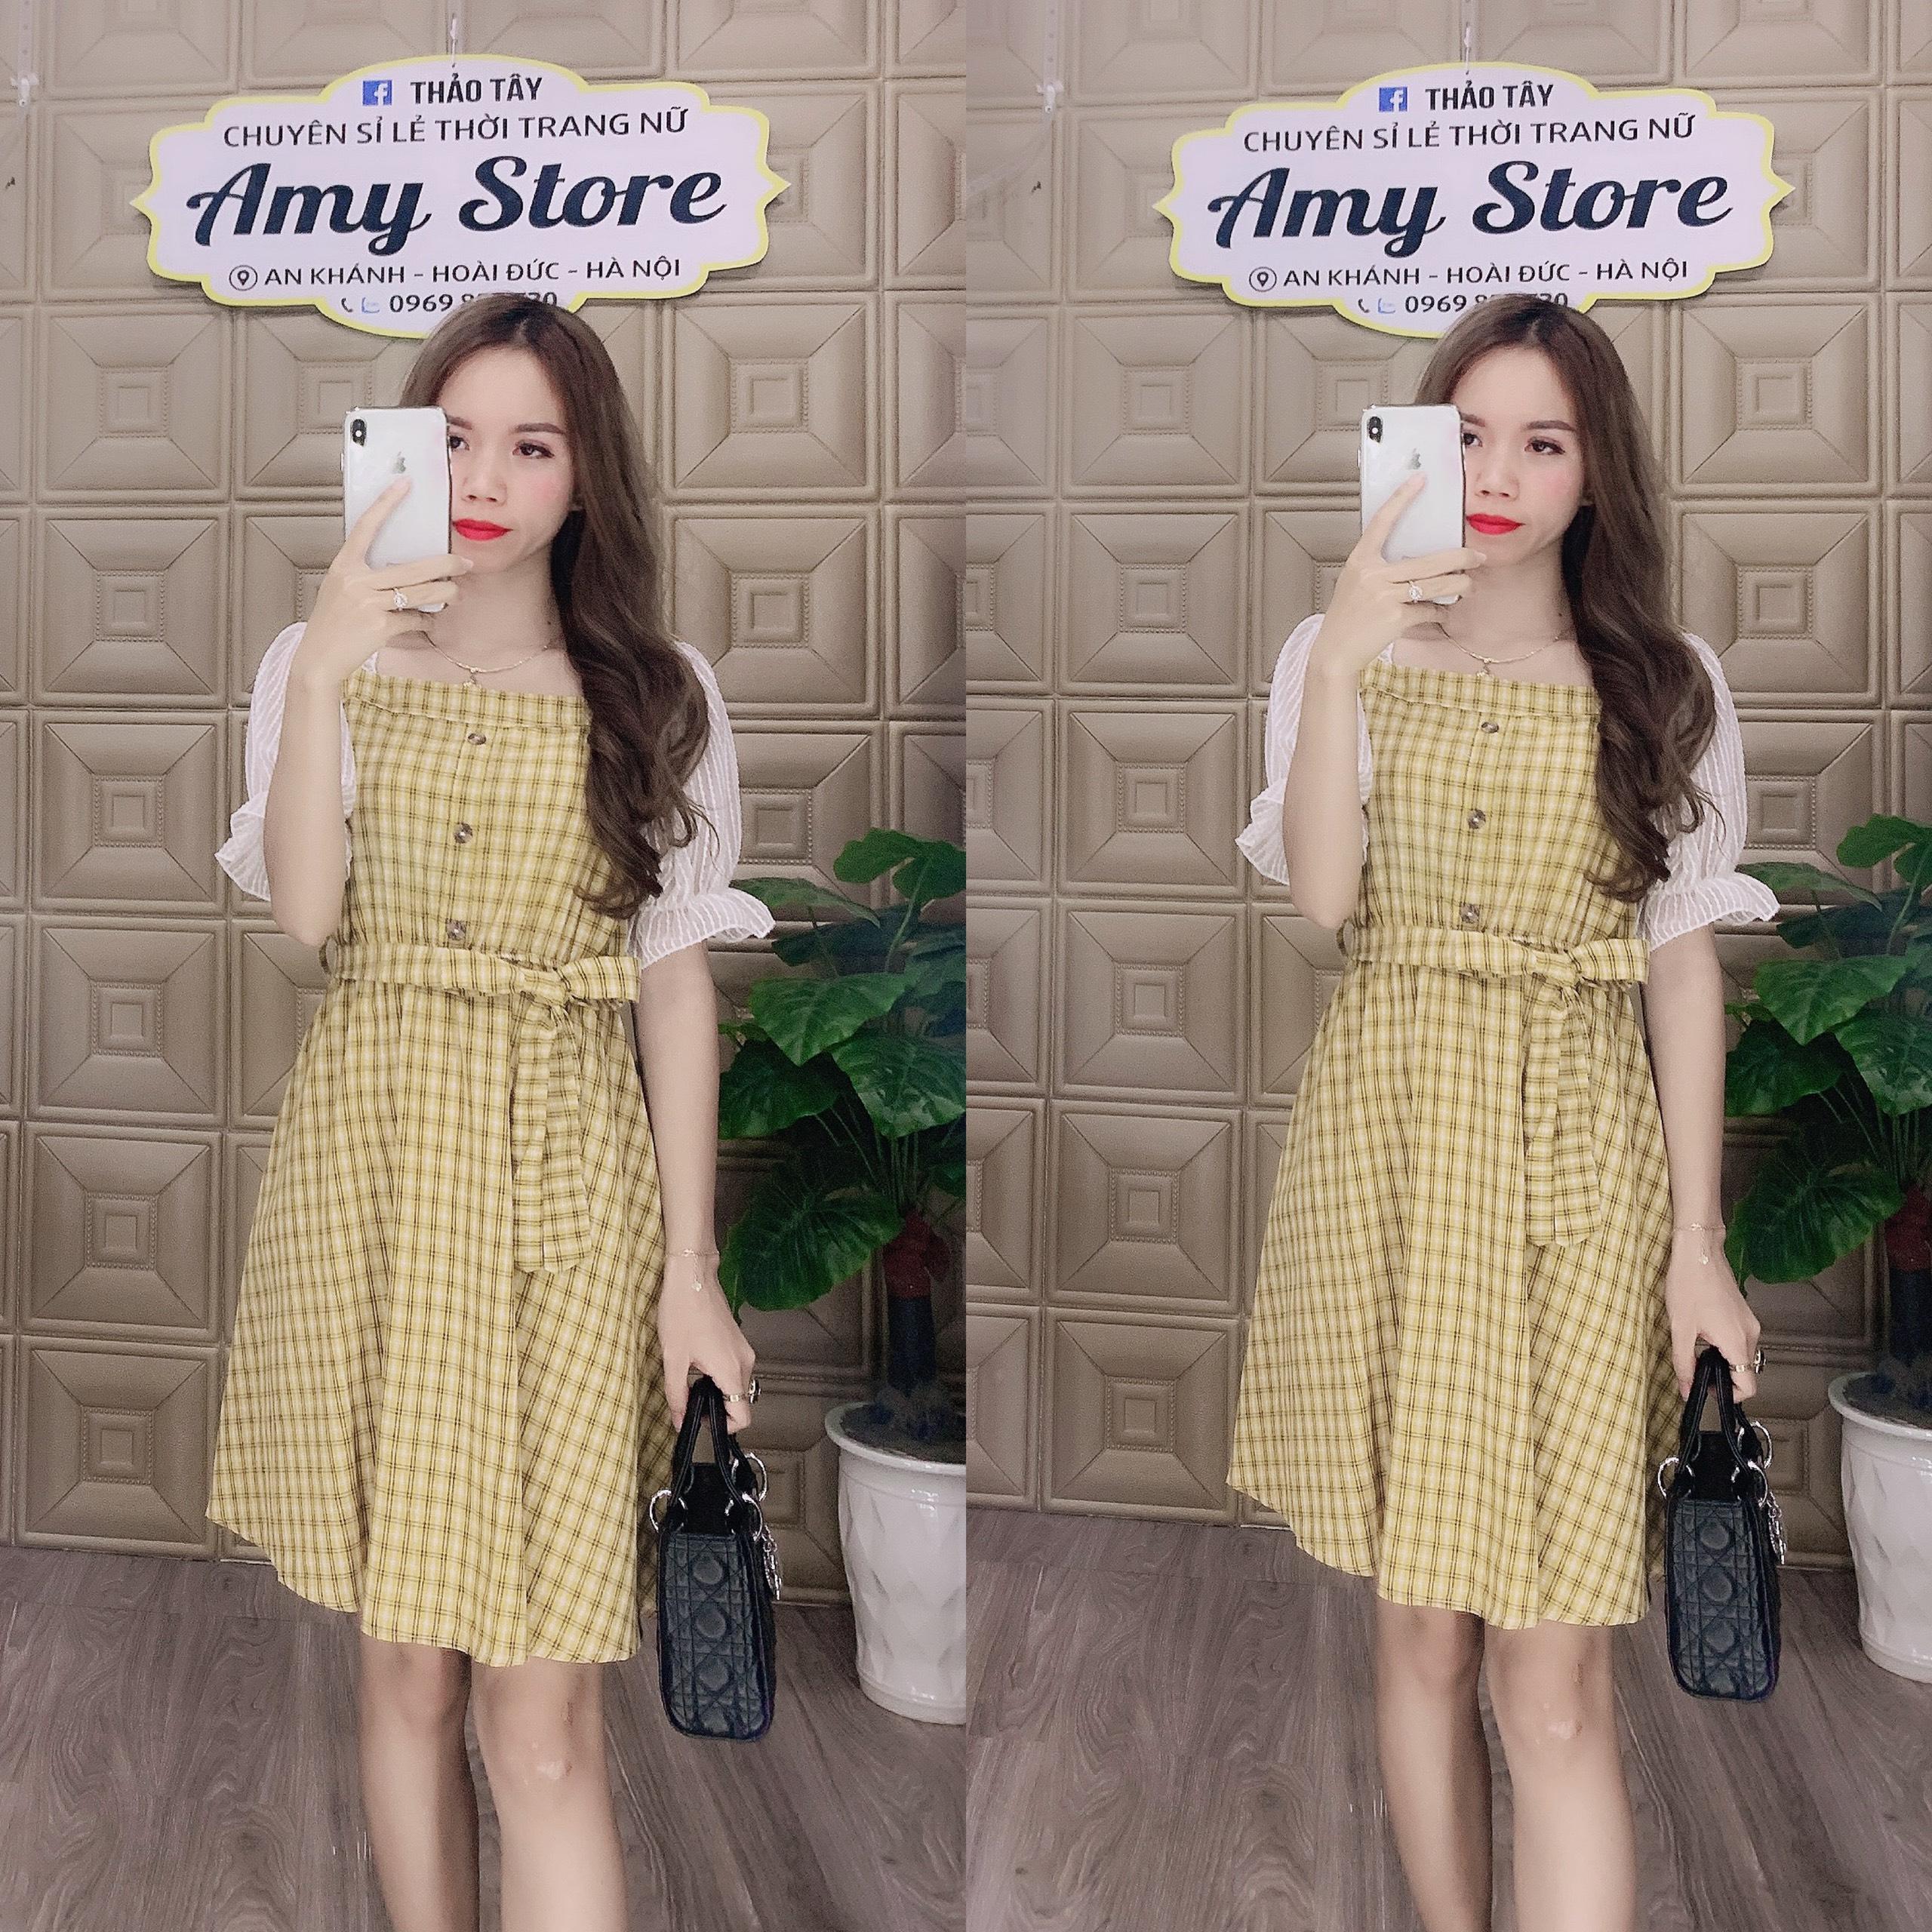 Amy Store - http://ngoisao.net/tin-tuc/thoi-trang/pham-huon... | Facebook